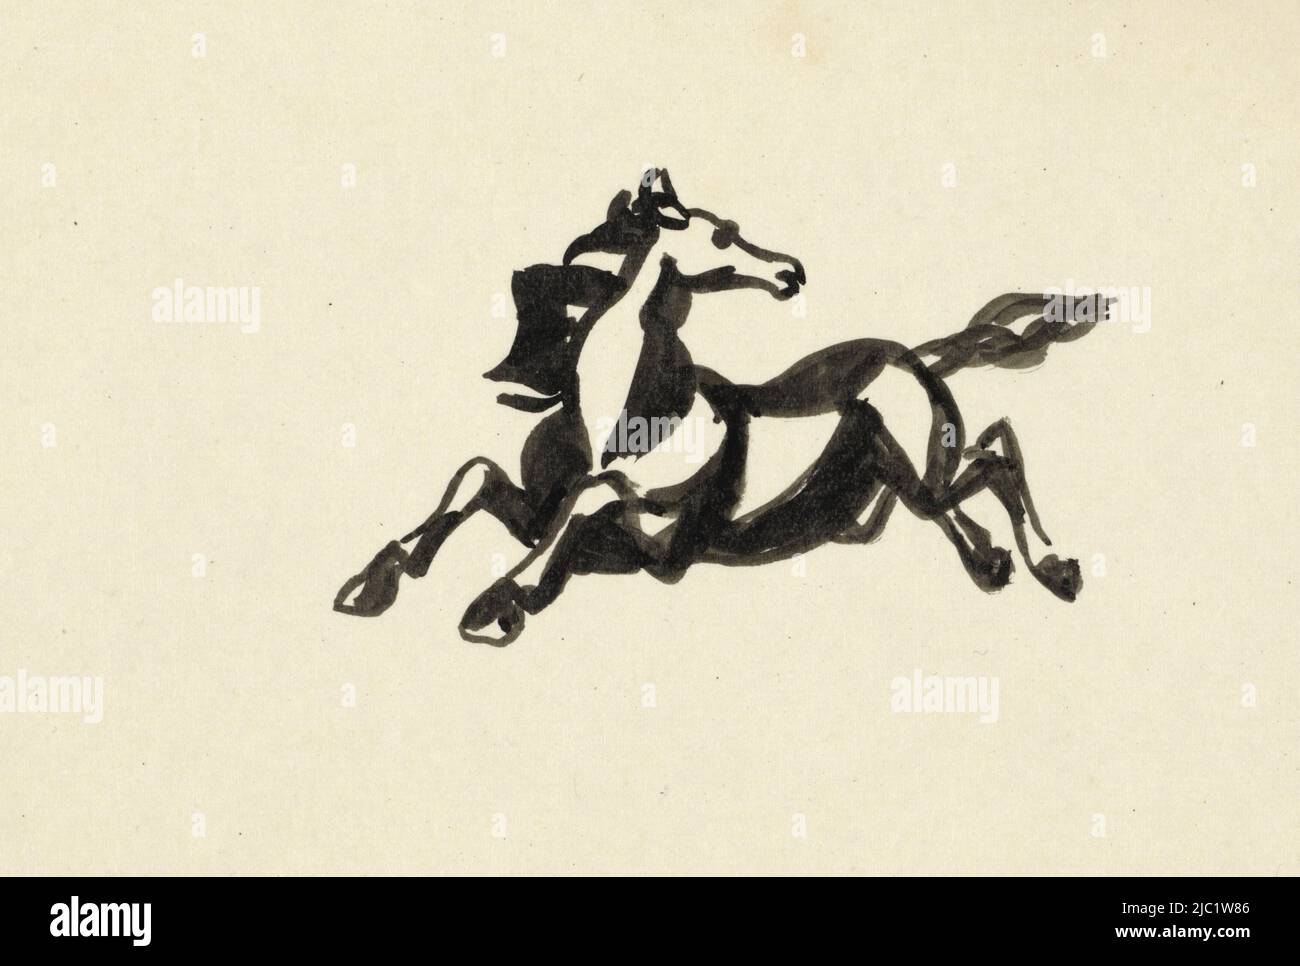 Cavallo di salto con la testa girata indietro, cavallo di salto con la testa girata indietro senza titolo Cavallo, disegnatore: Leo Gestel, 1937, carta, pennello, a 100 mm x l 155 mm Foto Stock